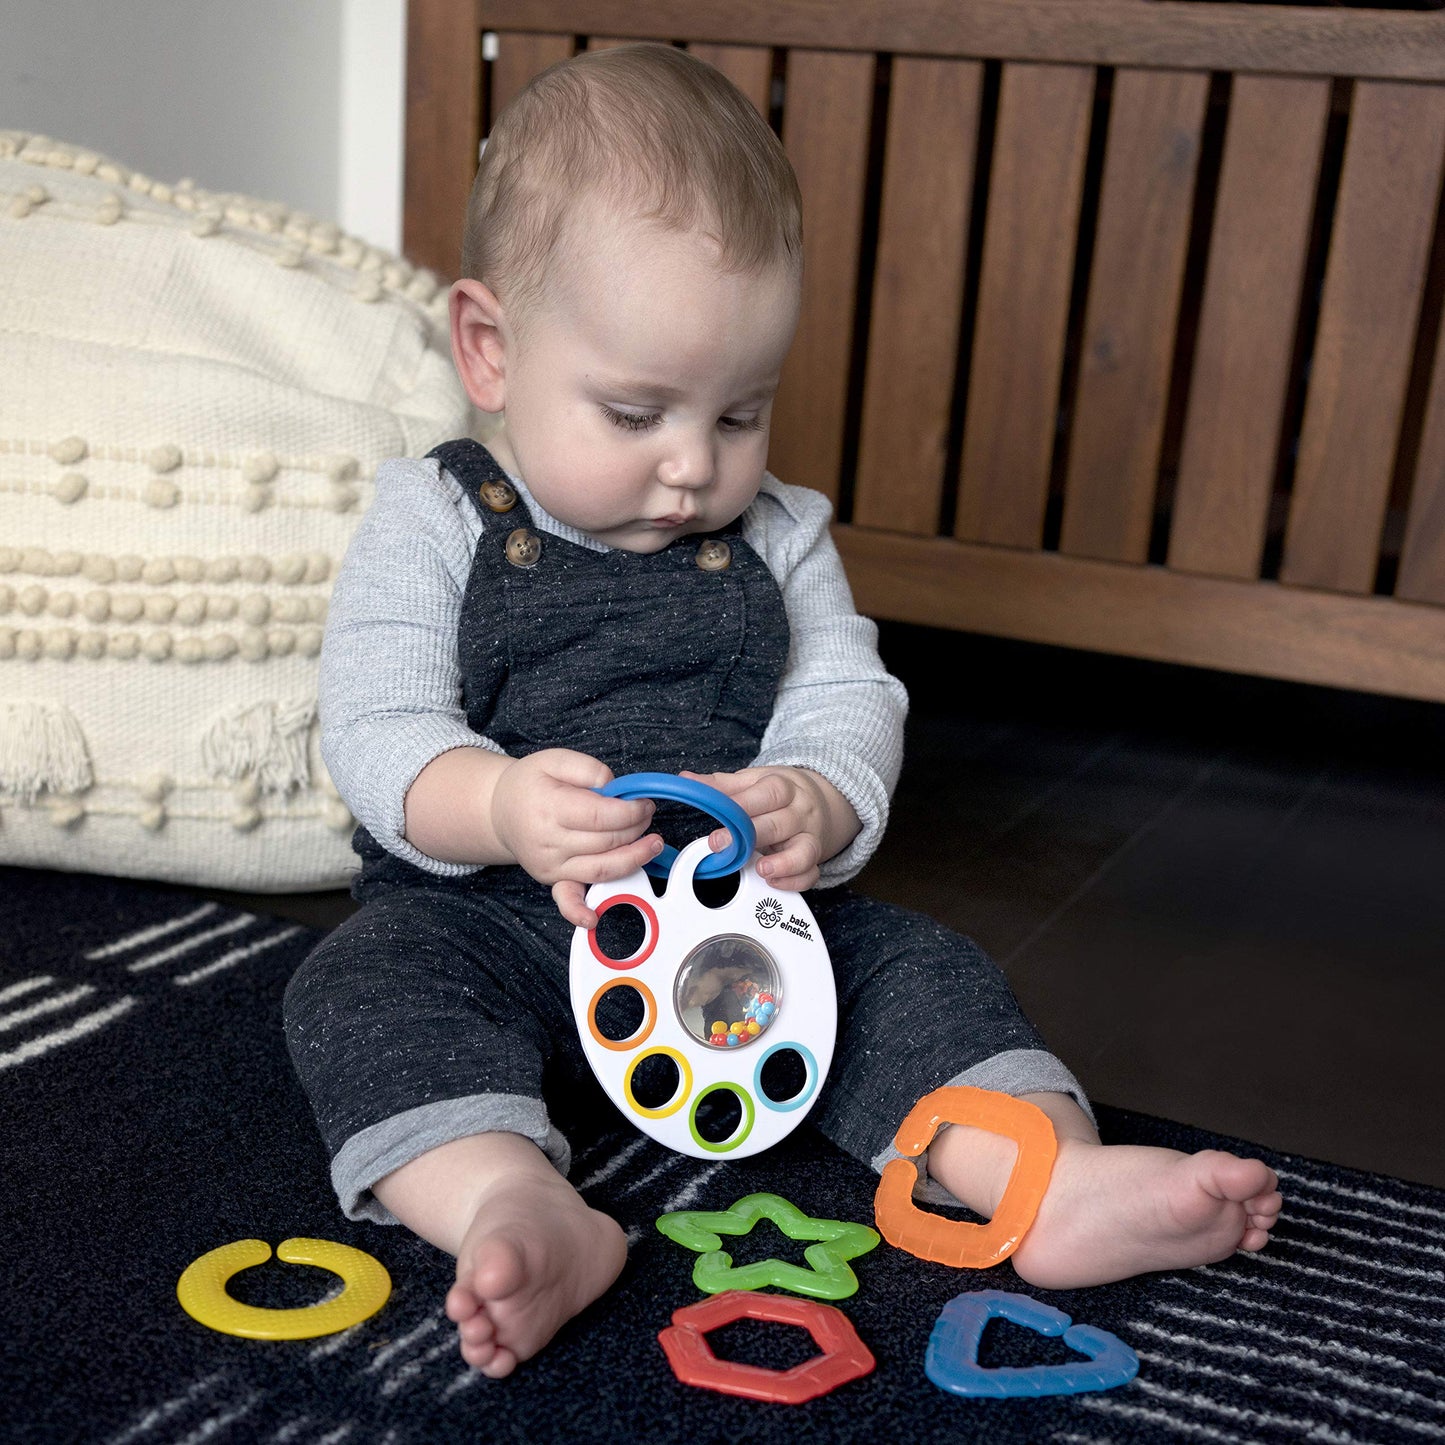 Baby Einstein Baby's First Art Teacher Developmental Toys Kit and Gift Set, Newborn and up